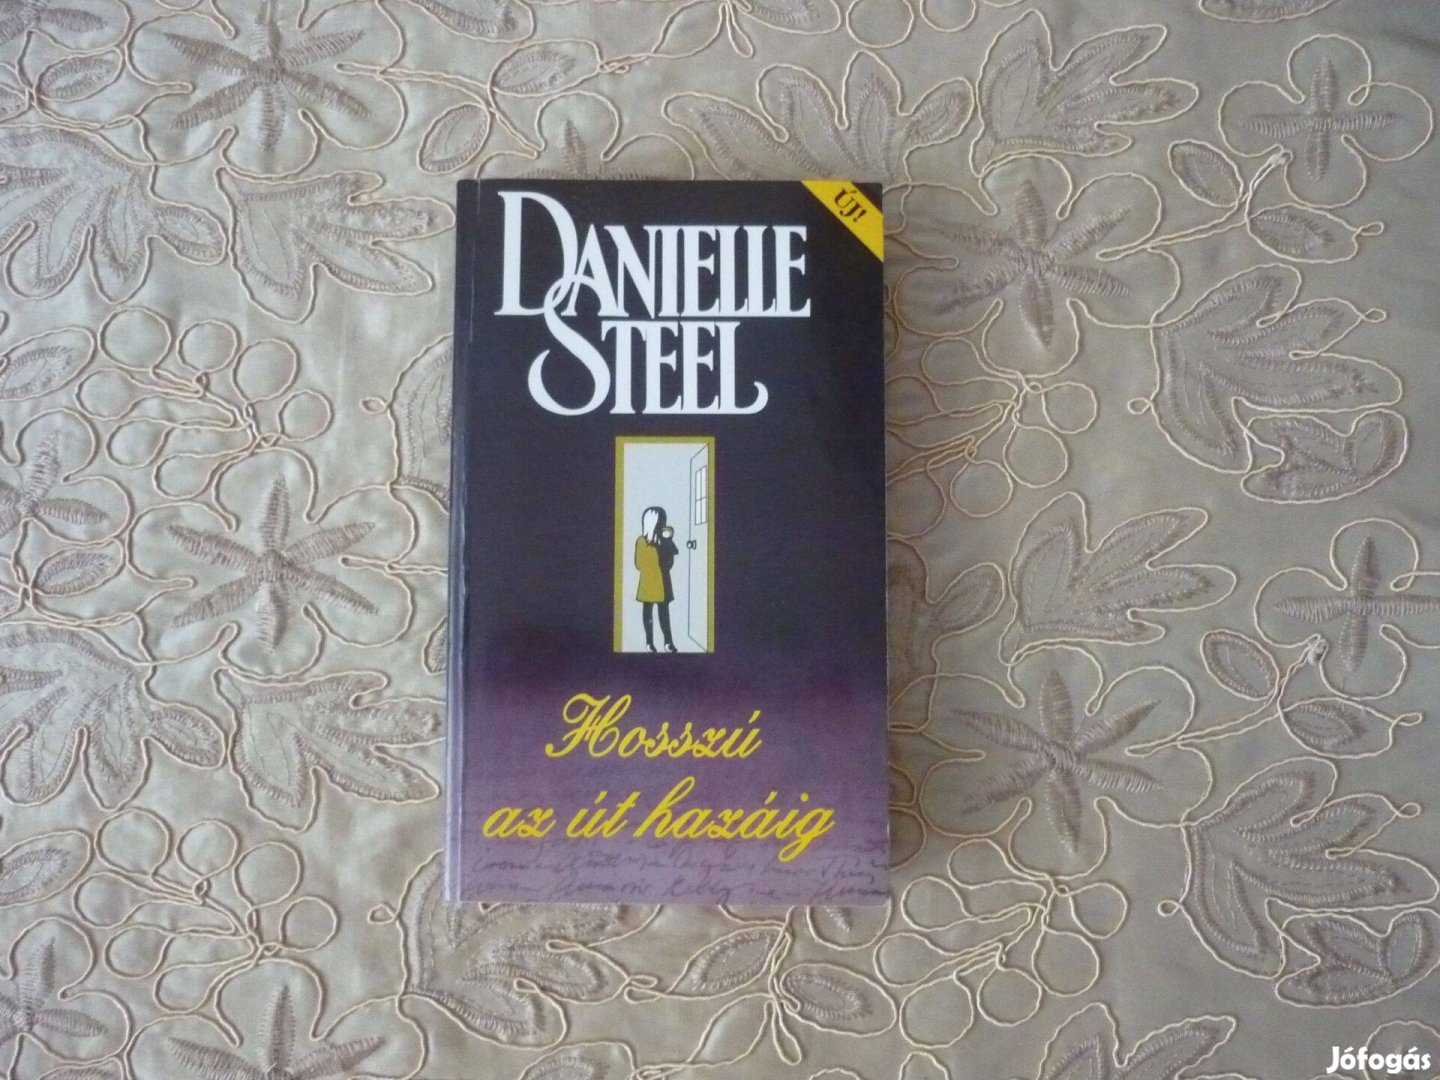 Danielle Steel - Hosszú az út hazáig - romantikus regény